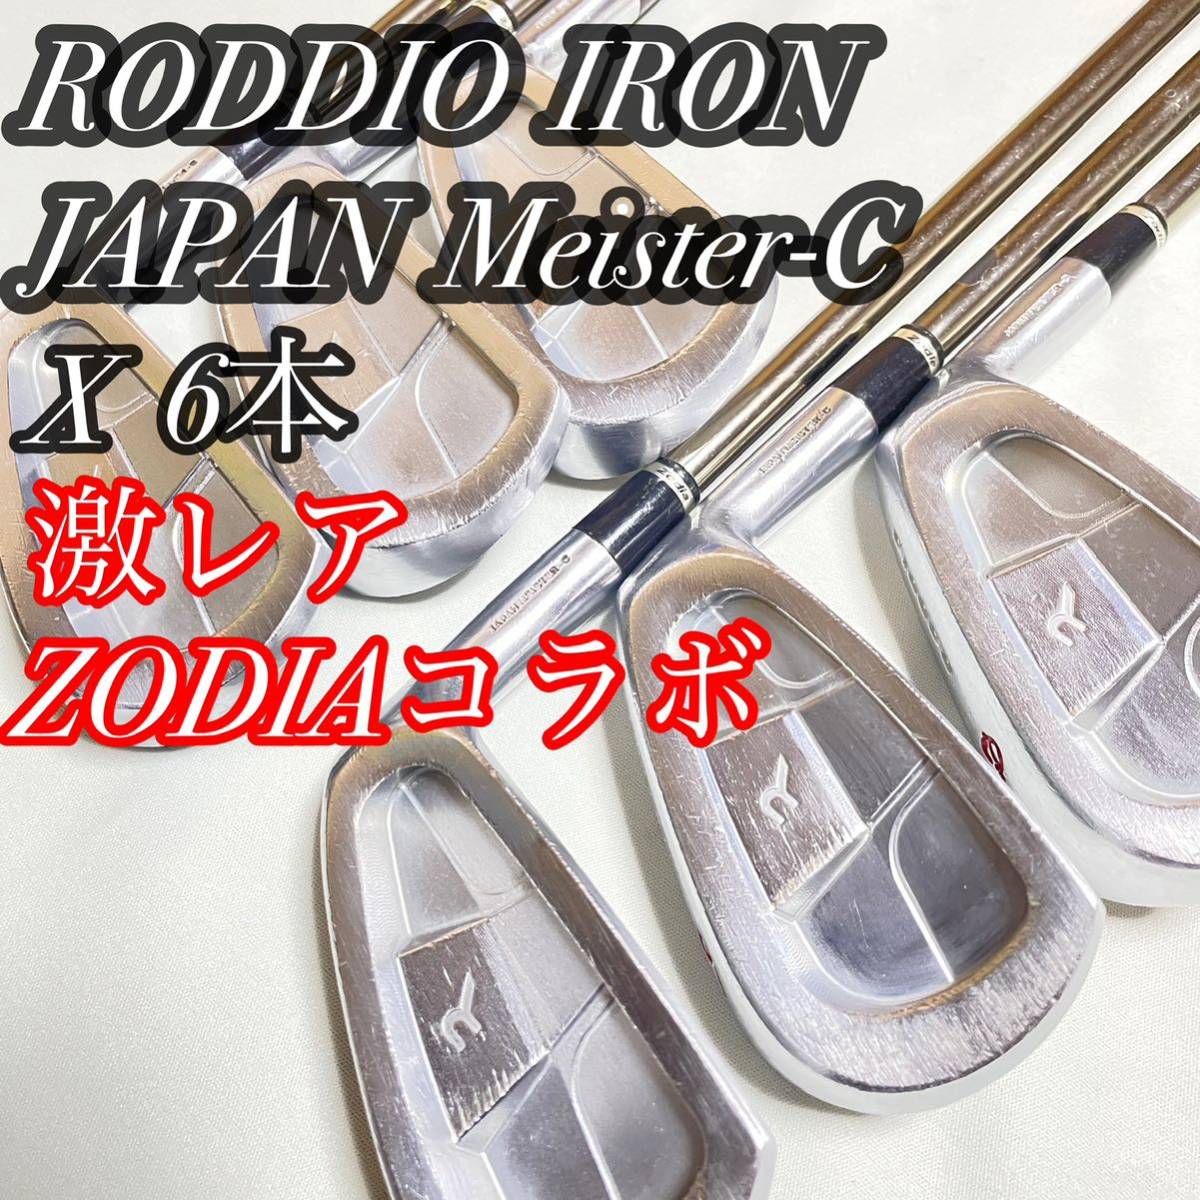 激レア ロッディオ ゾディア IRON JAPAN Meister-C 6本